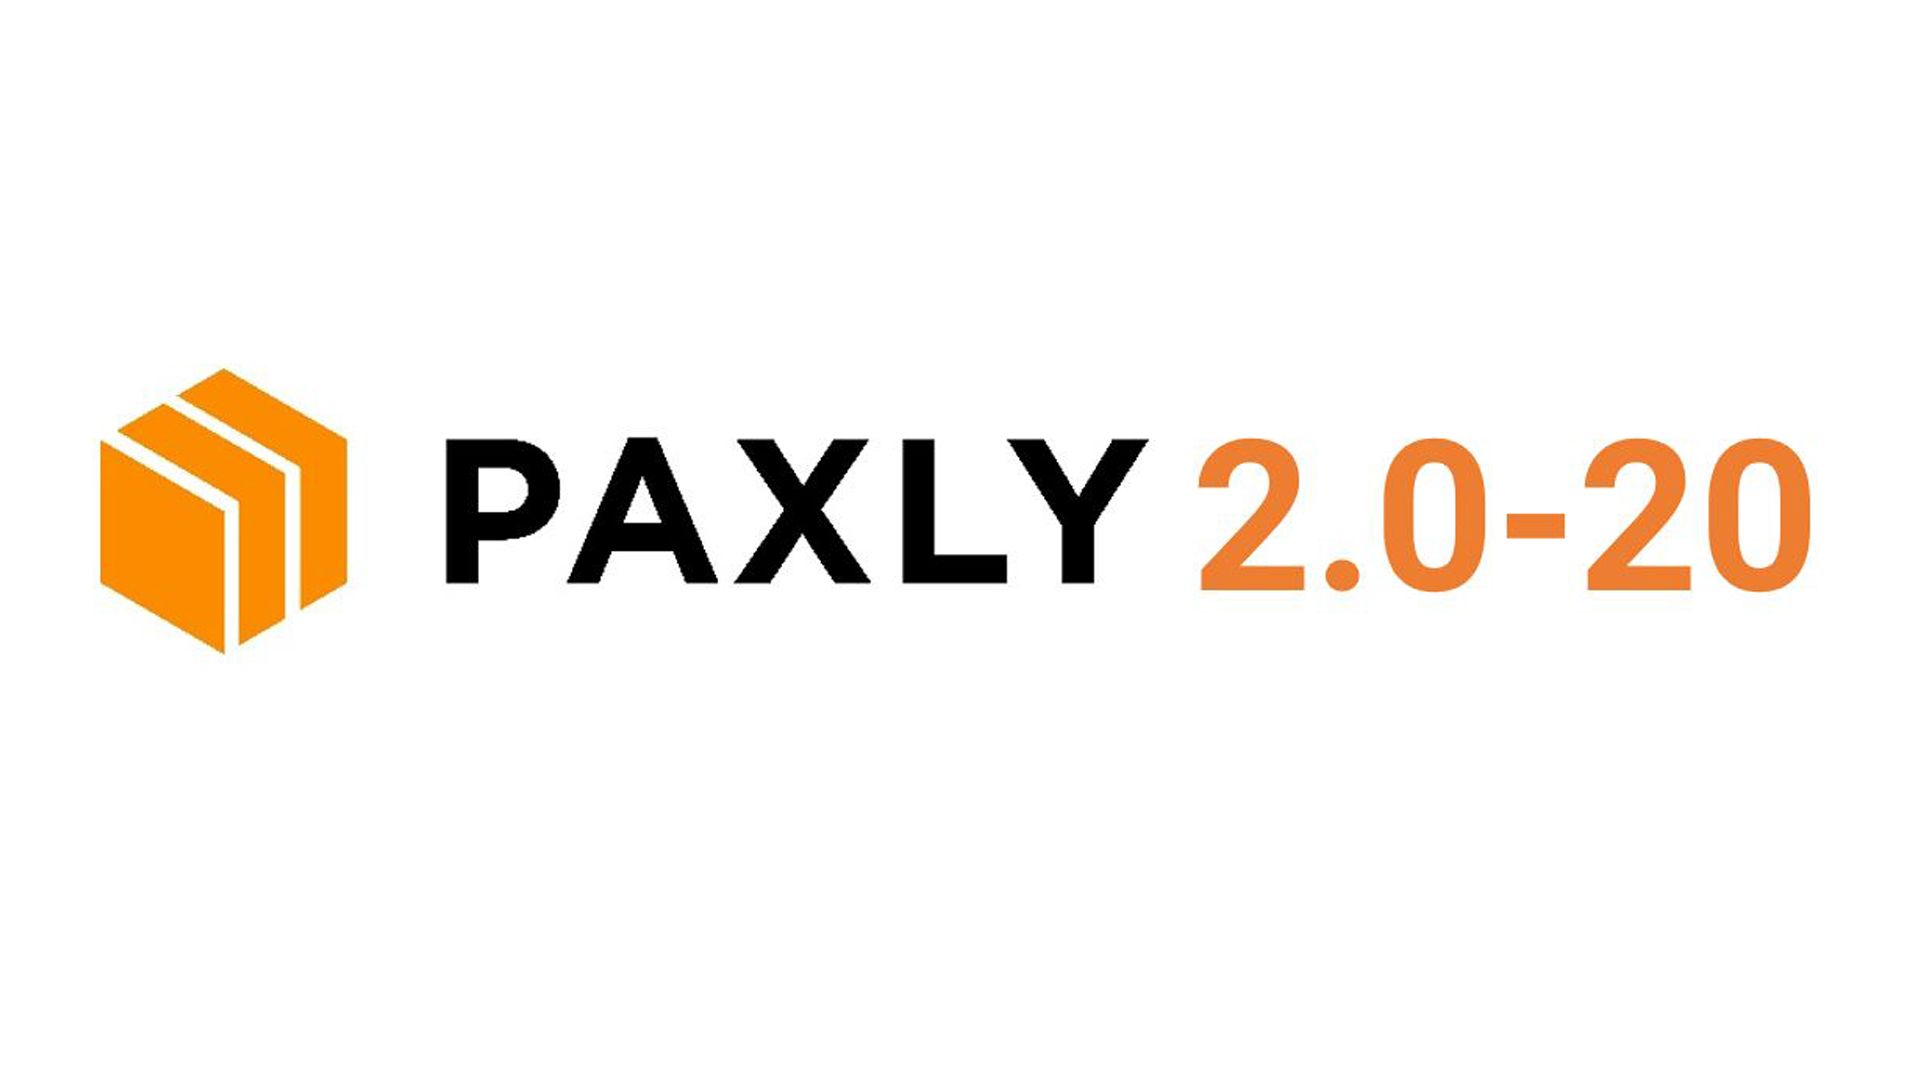 PAXLY Prozesse weiter digitalisieren PAXLY 2.0-20